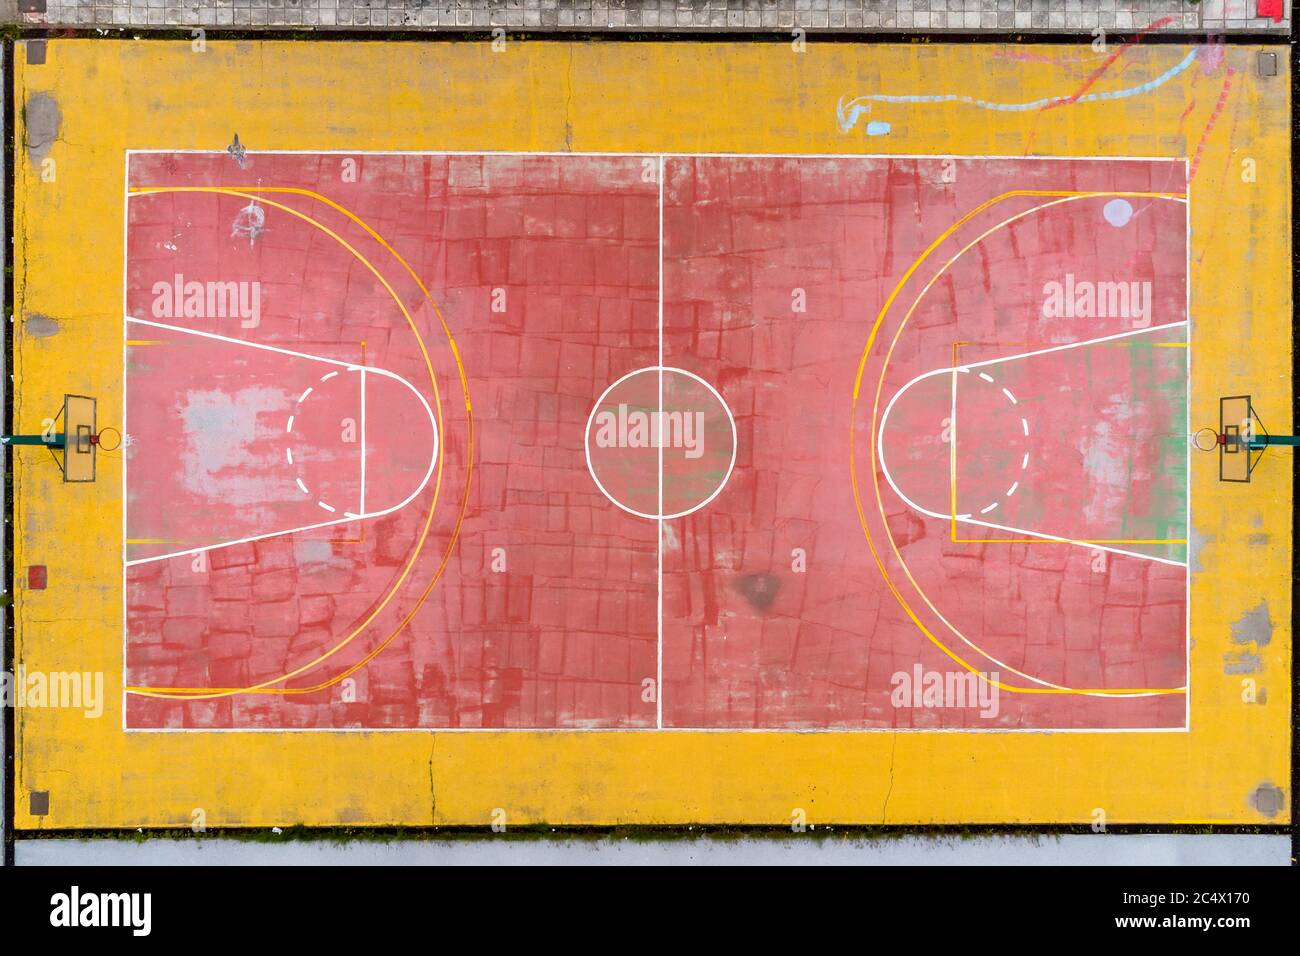 Basketballplatz und seine Layout-Ansicht von oben. Luftaufnahmen Stockfoto